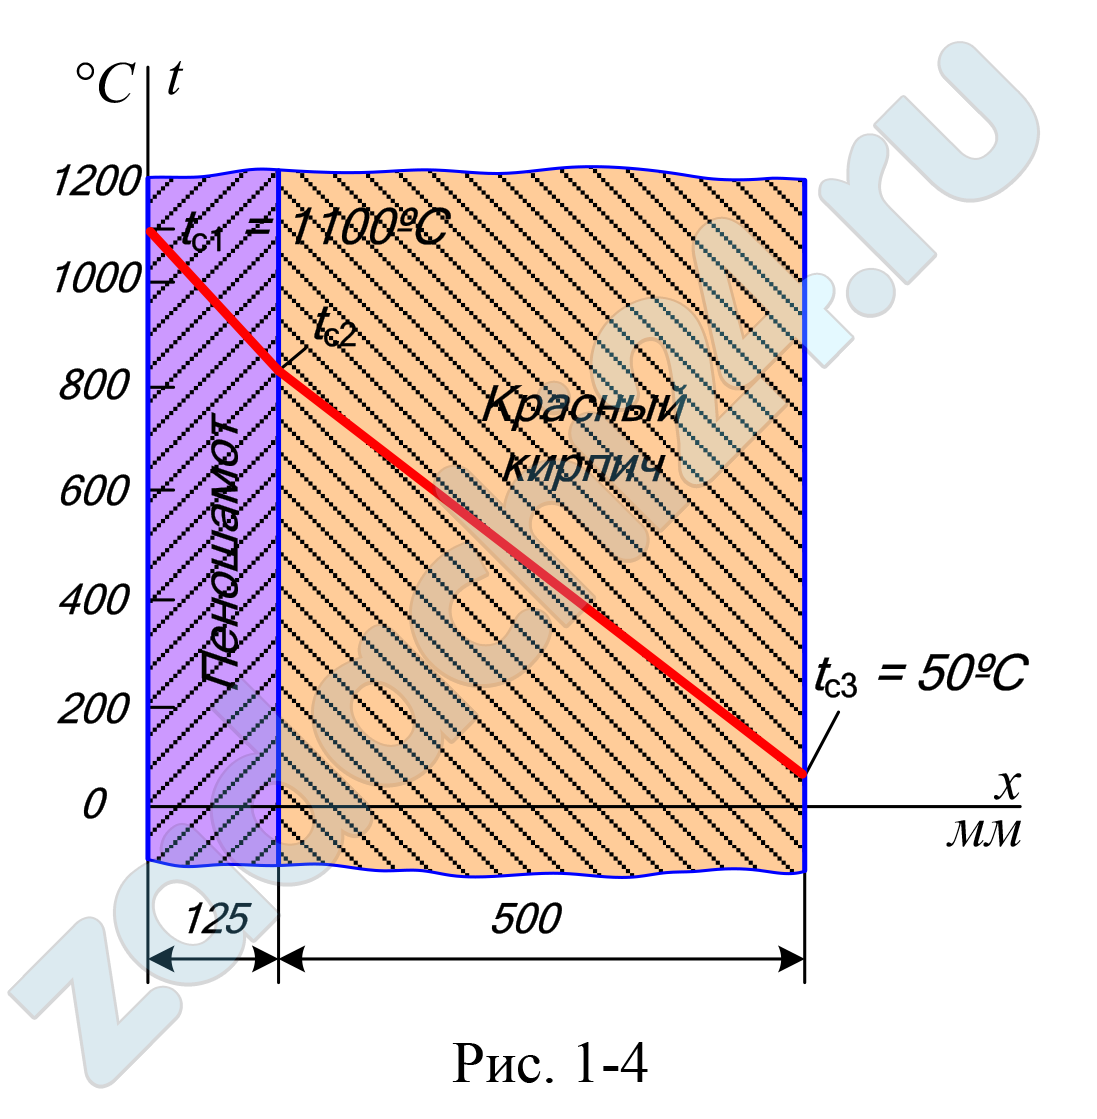 Стенка неэкранированной топочной камеры парового котла выполнена из слоя пеношамота толщиной δ1 = 125 мм и слоя красного кирпича толщиной δ2 = 500 мм. Слои плотно прилегают друг к другу. Температура на внутренней поверхности топочной камеры tс1 = 1100º, а на наружной tс3 = 50º (рис. 1-4). Коэффициент теплопроводности пеношамота λ1 = 0,28 + 0,00023t, красного кирпича λ2 = 0,7 Вт/(м·ºС). Вычислить тепловые потери через 1 м² стенки топочной камеры и температуру в плоскости соприкосновения слоев.